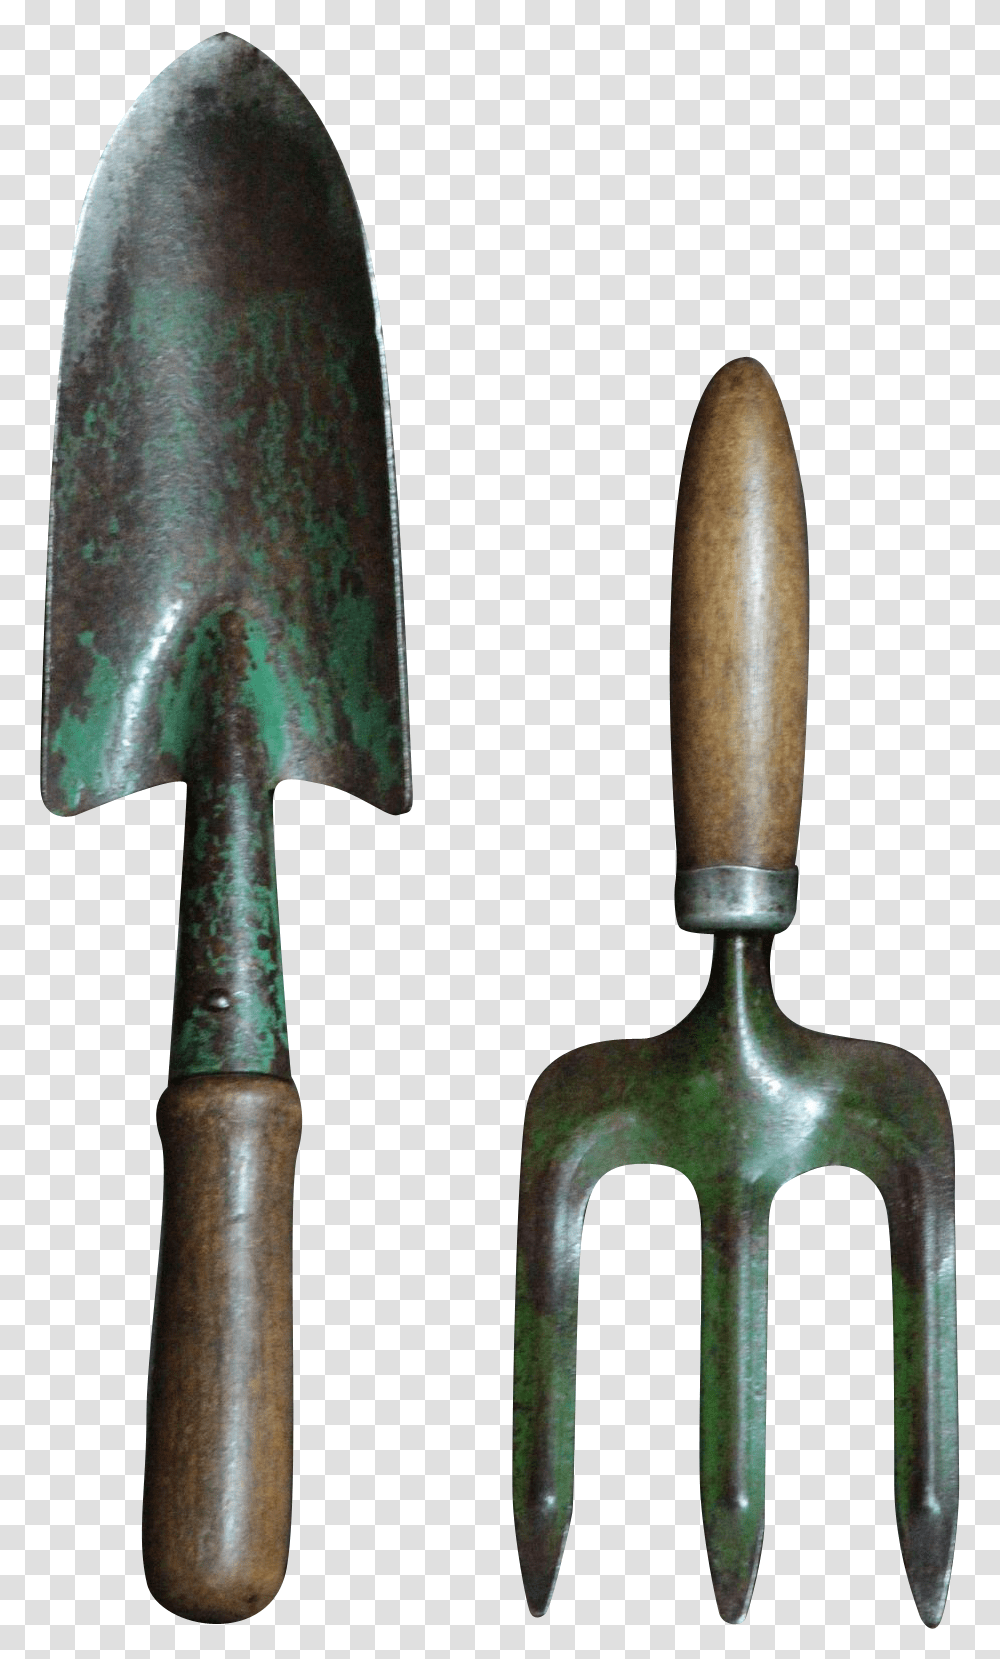 Trowel Garden Hand Tool, Hammer, Axe, Shovel Transparent Png